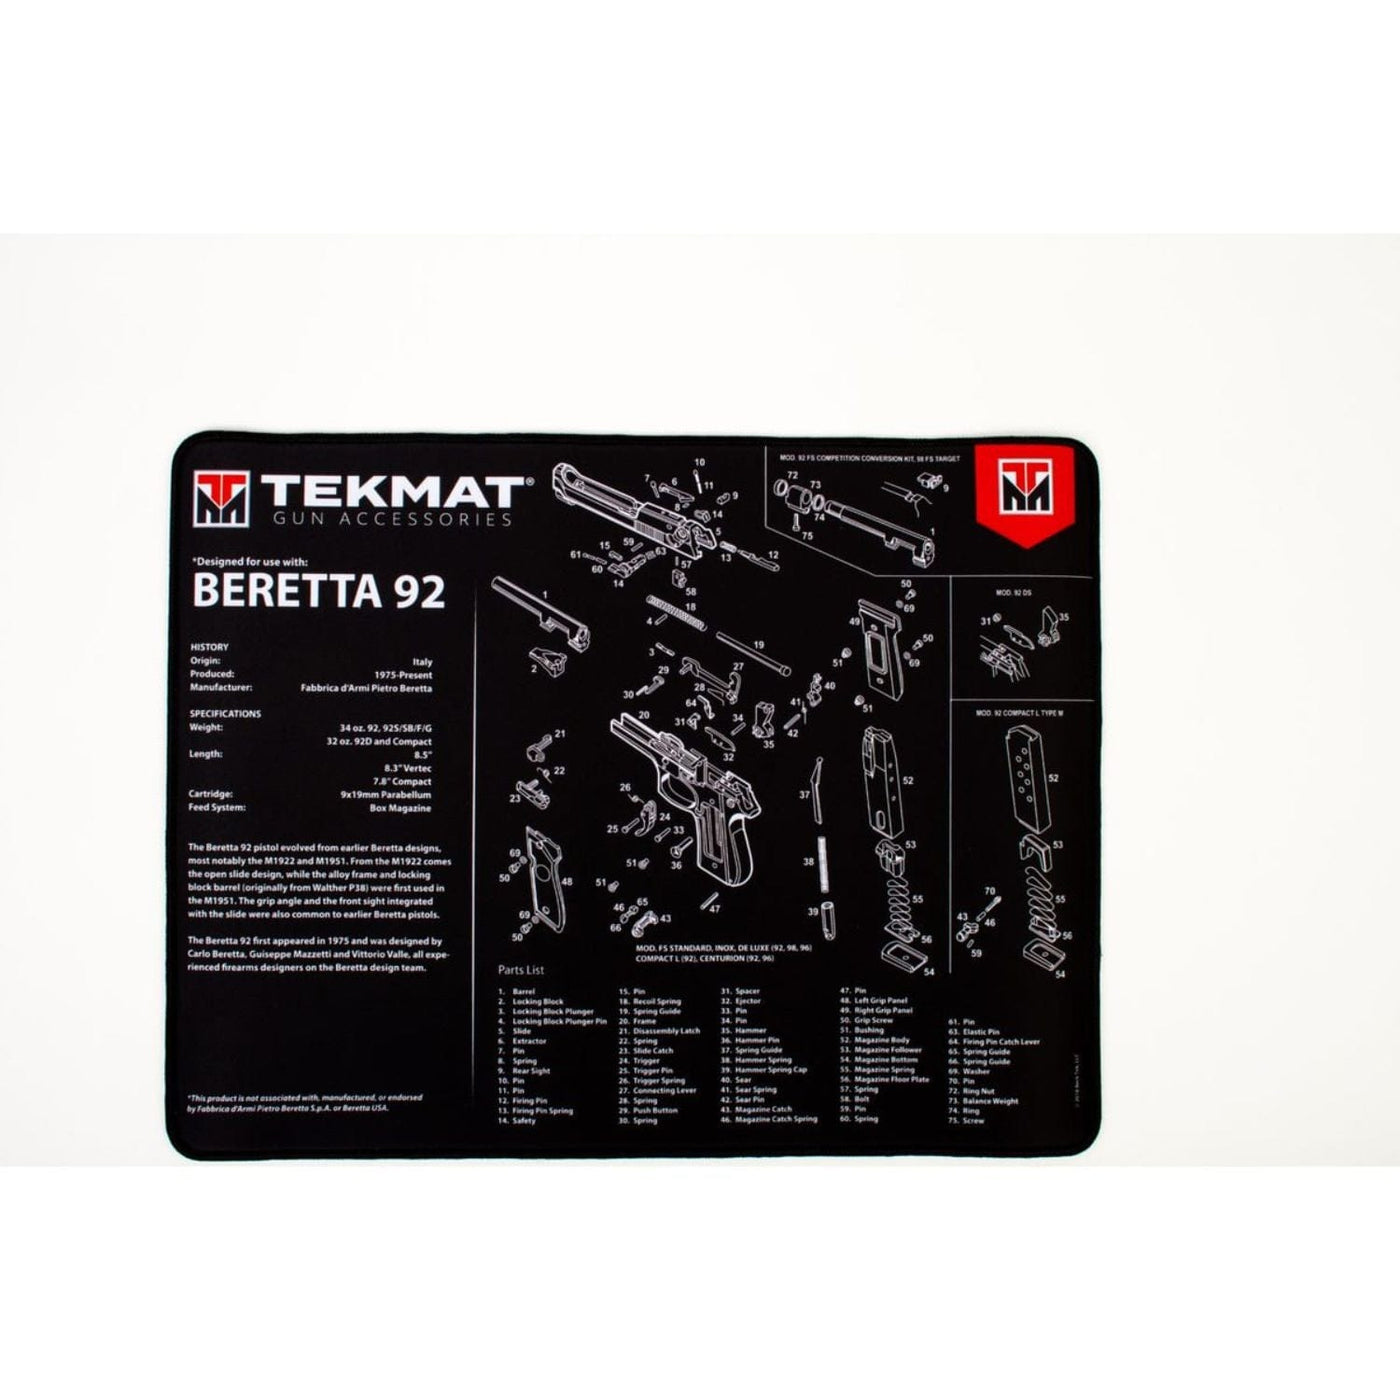 TekMat TekMat Ultra 20 Beretta 92 Gun Cleaning Mat Shooting